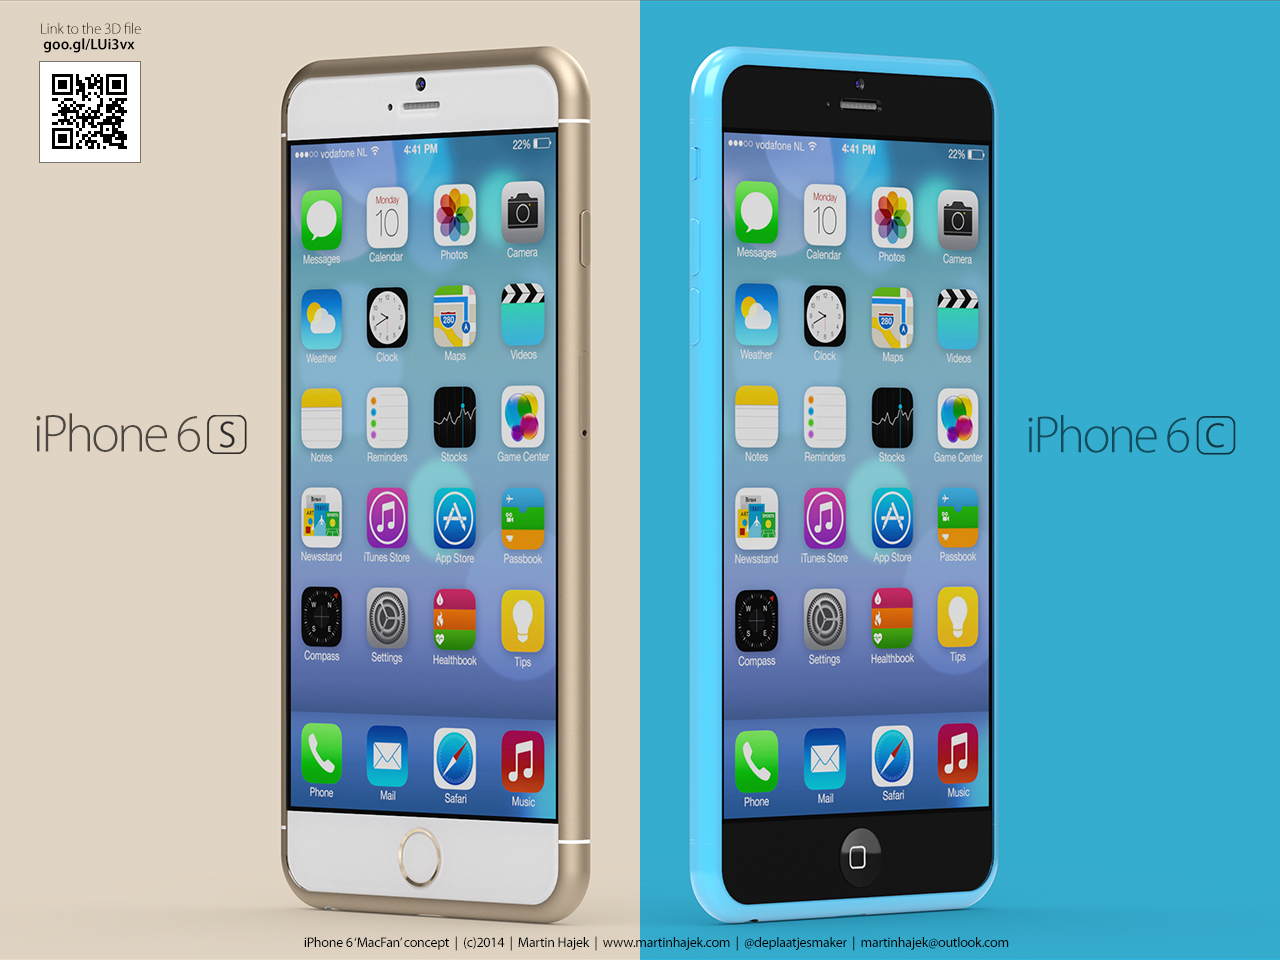 iPhone 6,iPhone 6 fiyatı,iPhone 6 özellikleri,iPhone 6 tanıtım,iPhone 6 ne zaman çıkar,iPhone 6 çıkış tarihi